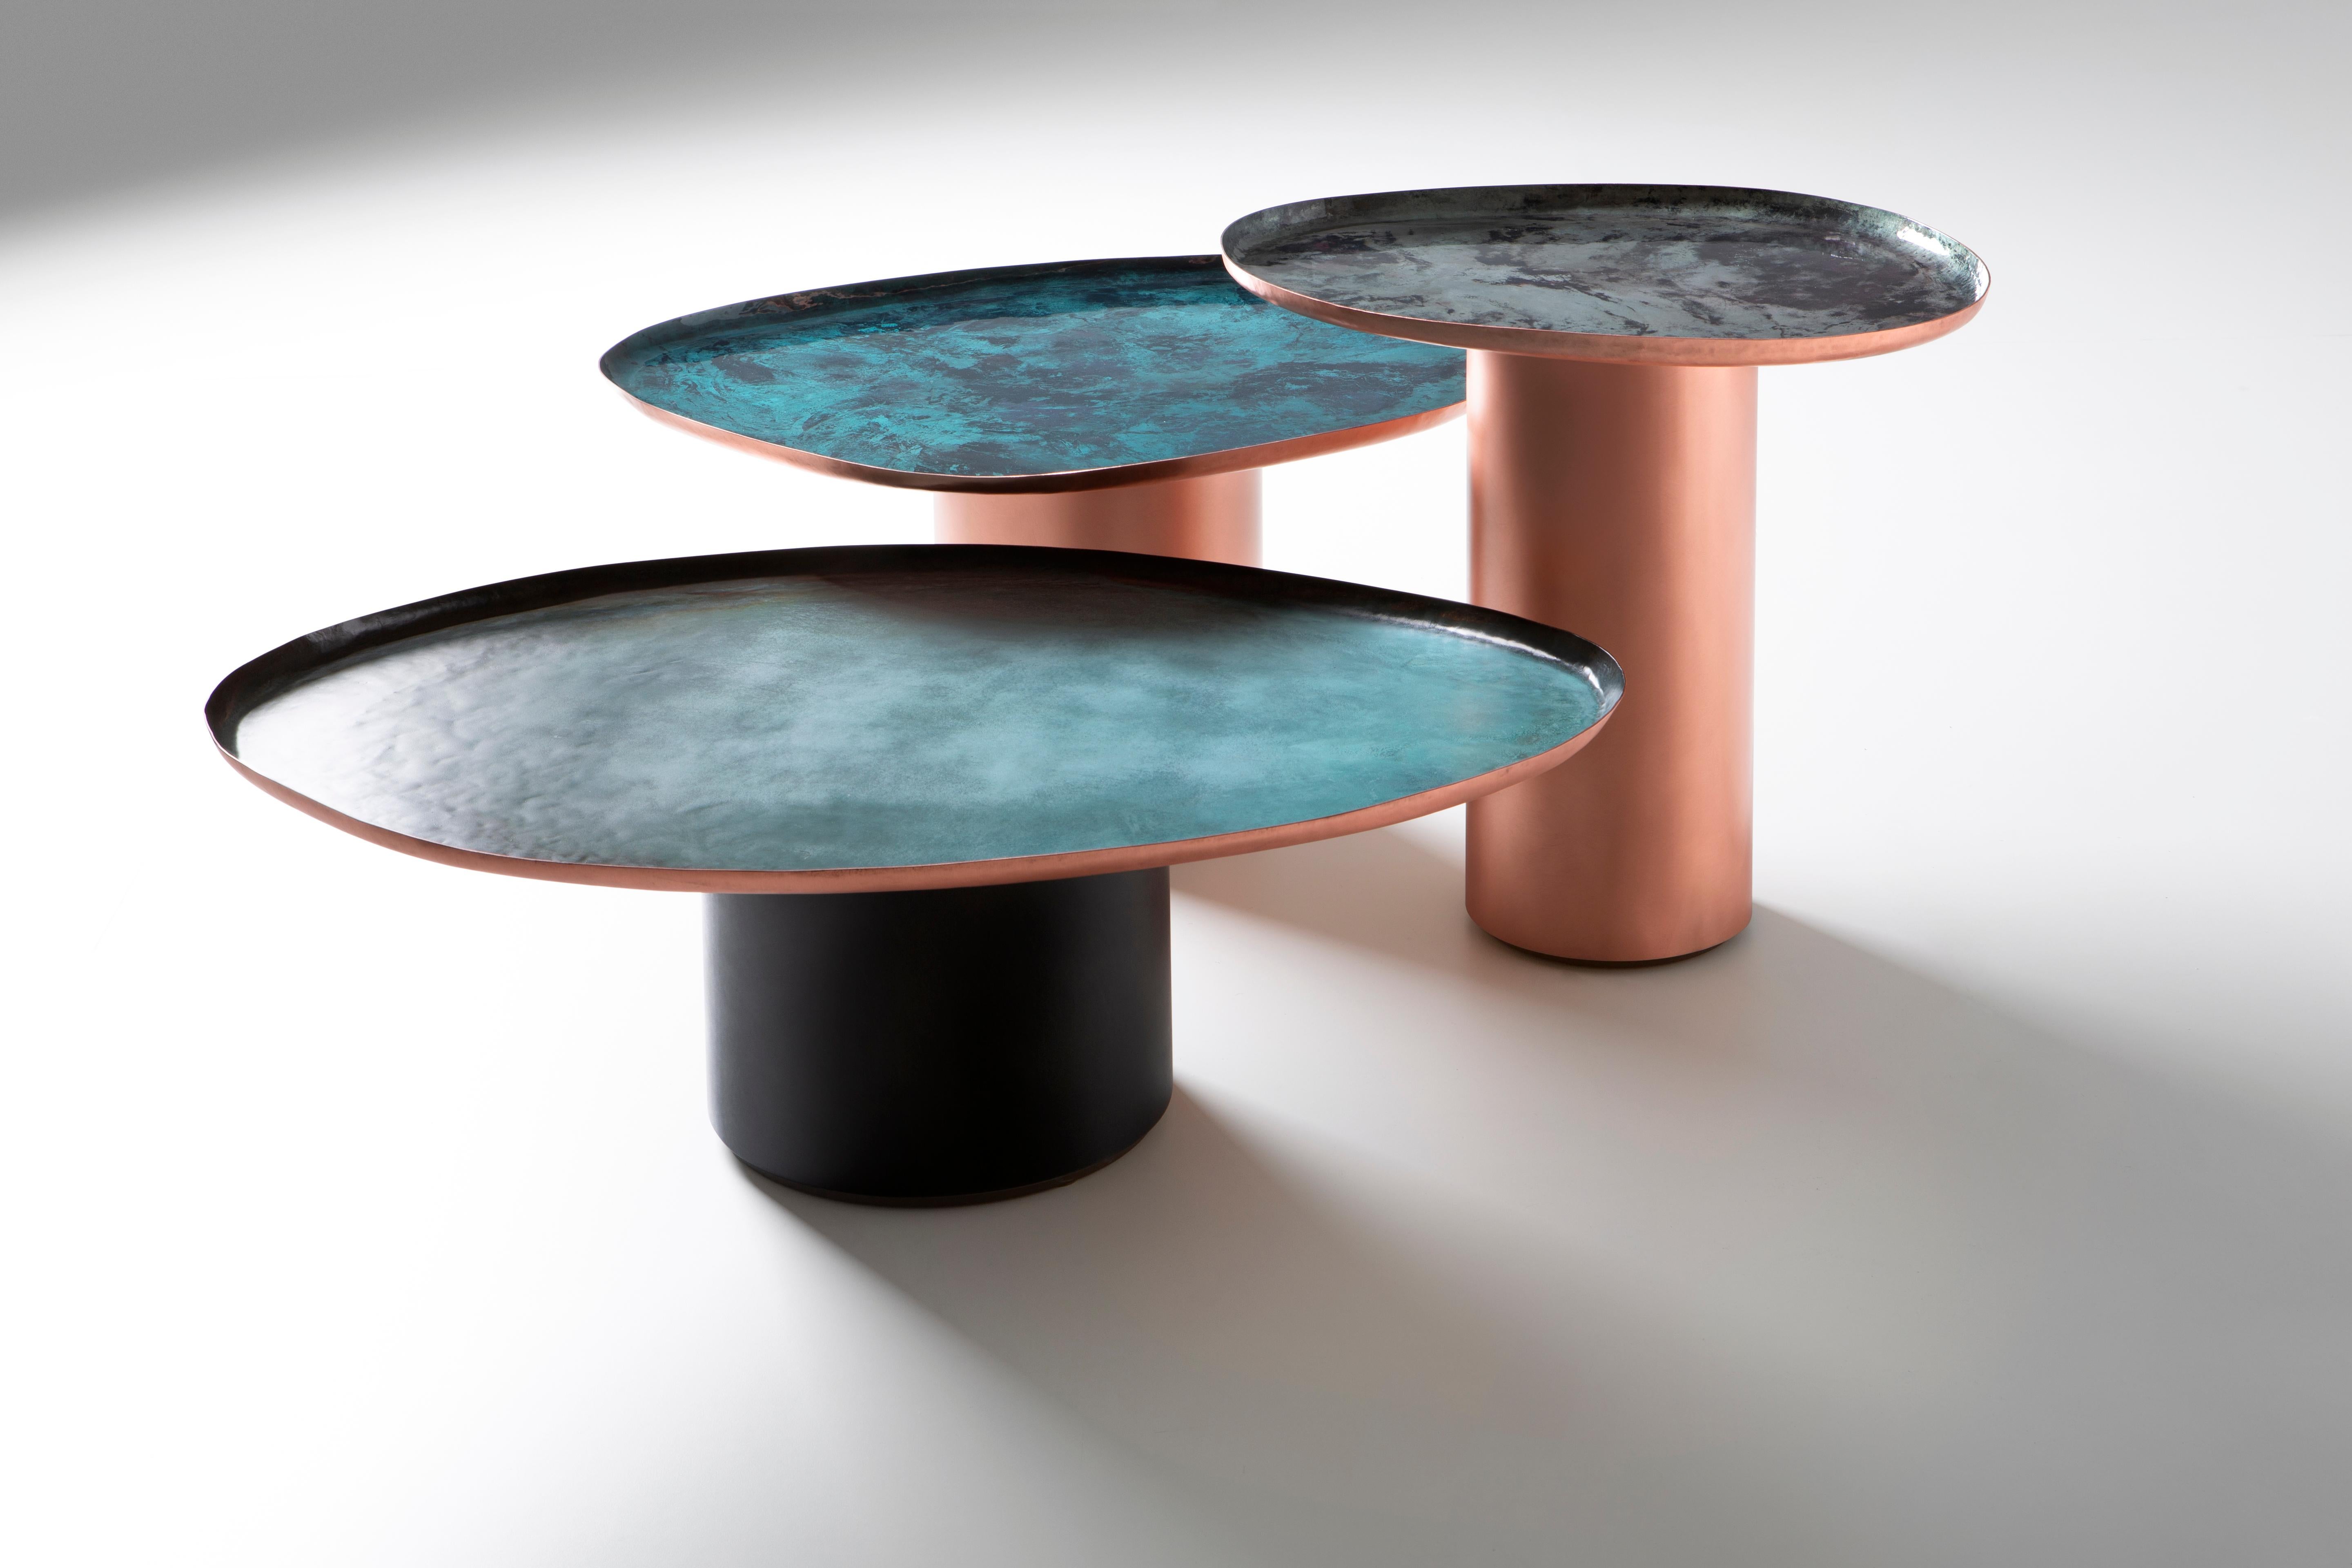 Drops est une famille de tables basses en trois tailles différentes, inspirée par les formes inattendues et irrégulières des gouttes d'eau sur une surface. Leurs lignes douces et familières incarnent le savoir-faire artisanal de De Castelli, qui a